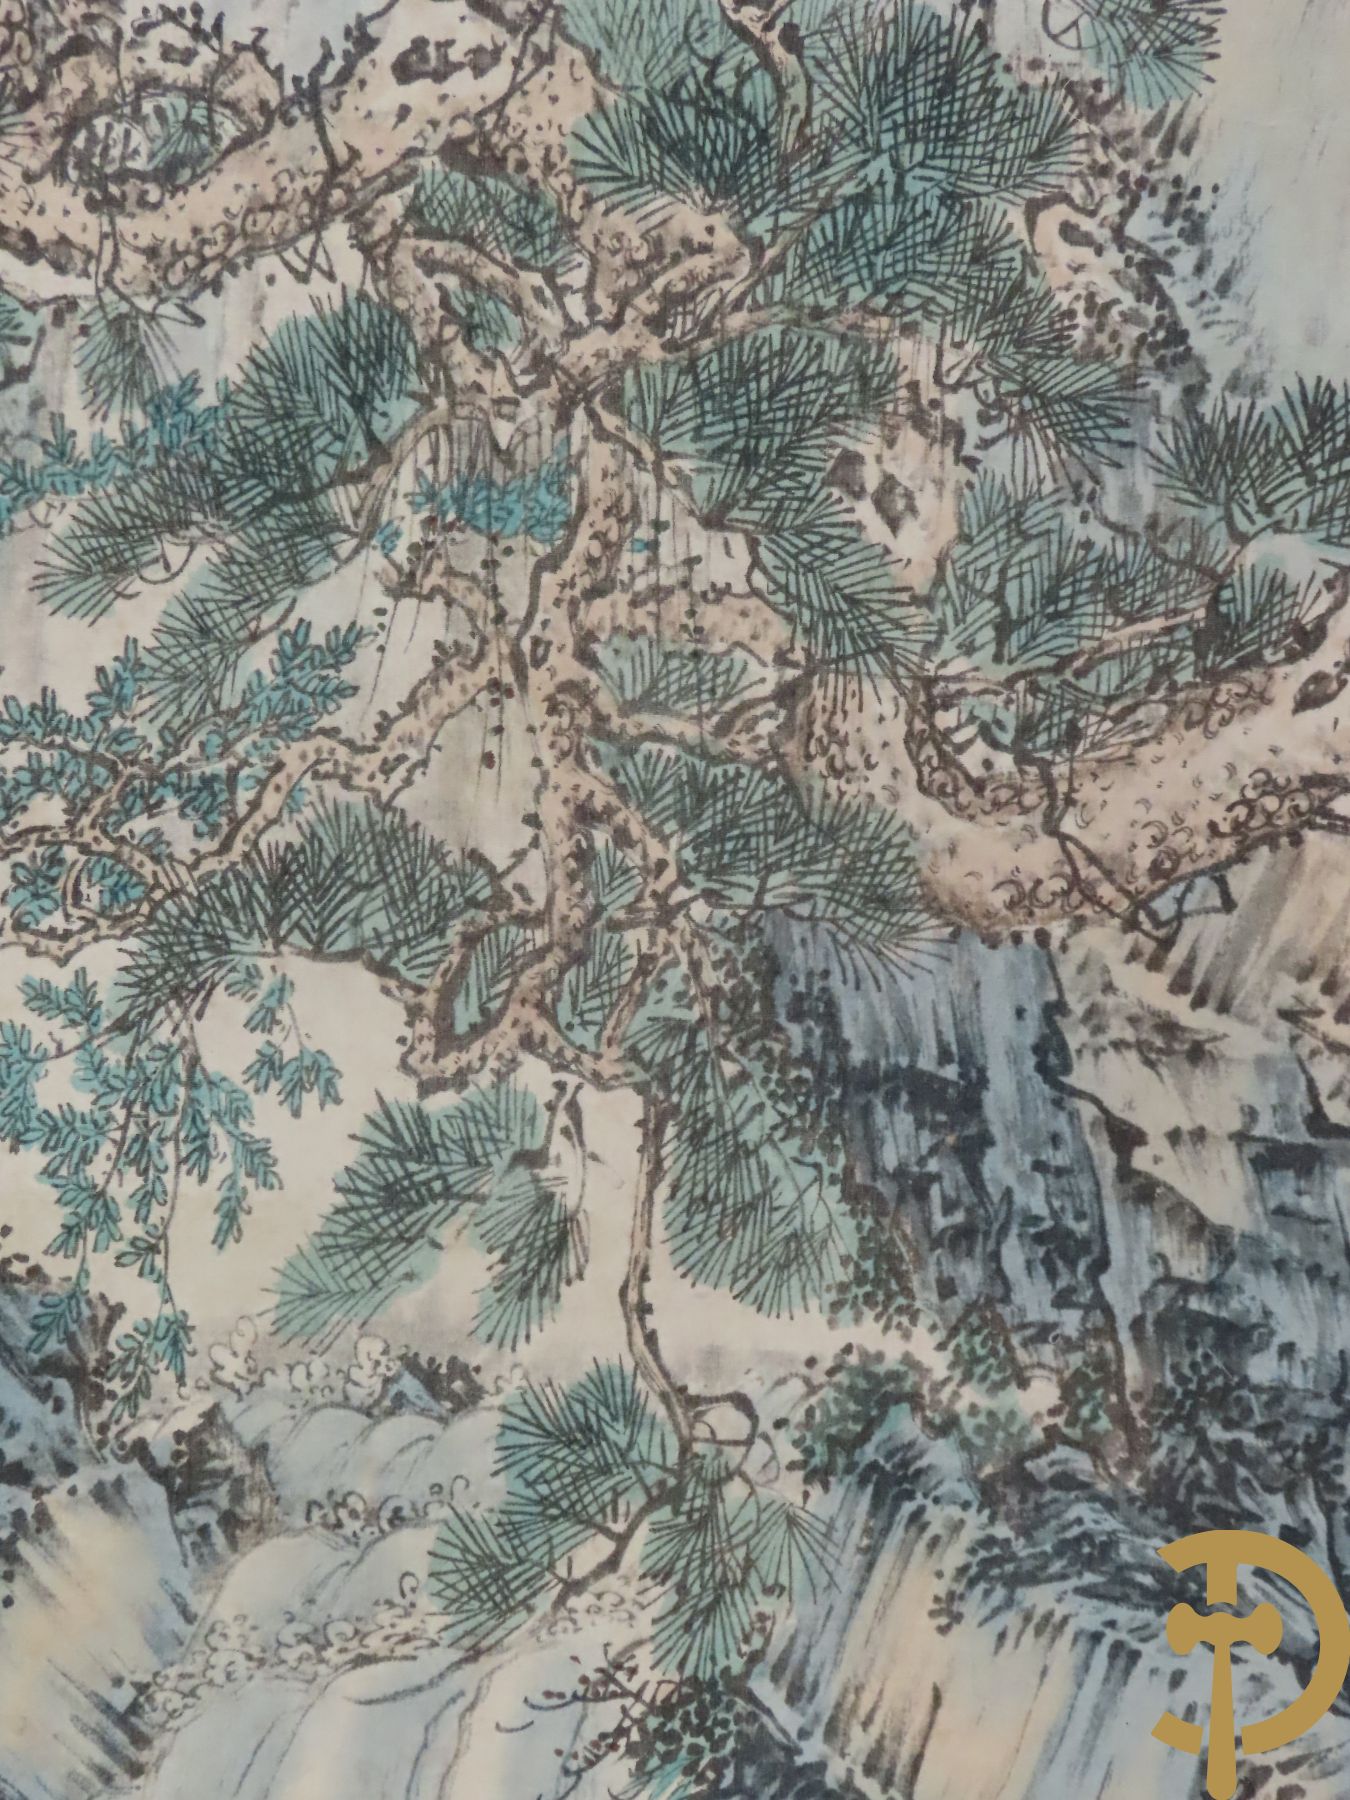 Vergulde beschilderde Chinese zwarte lak naaidoos met geanimeerde landschappen + Chinese scroll met landschapsdecor